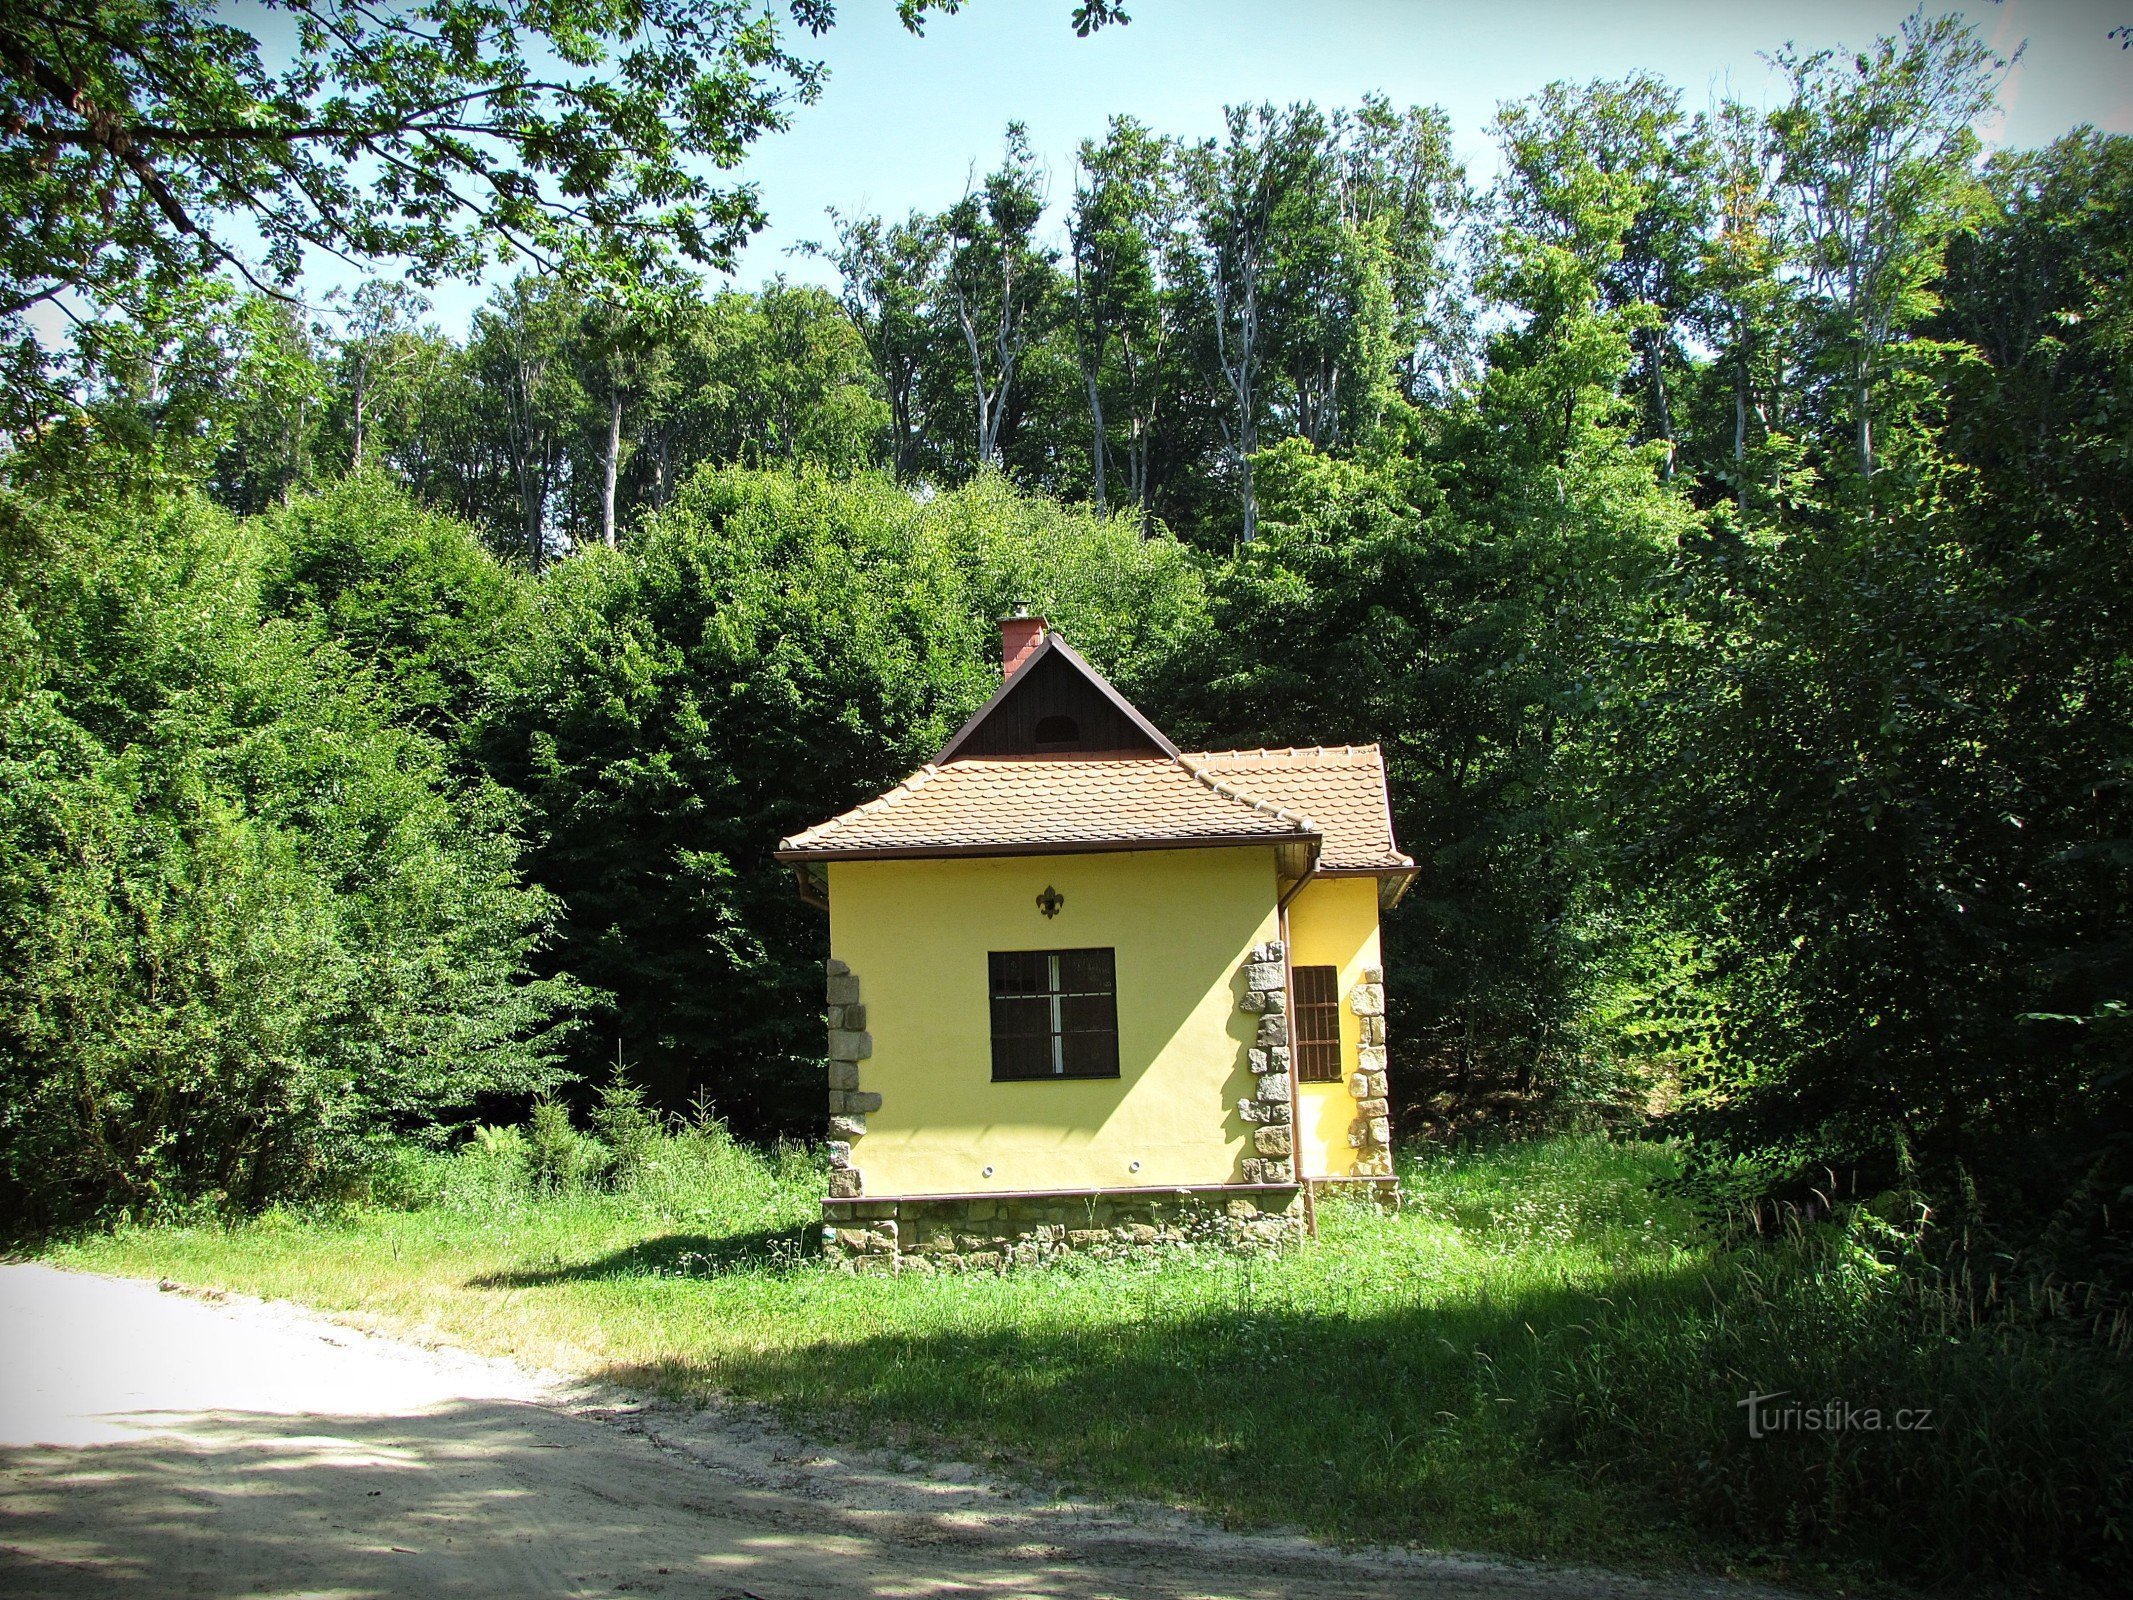 Chřiby - lovačka kuća Hubertka